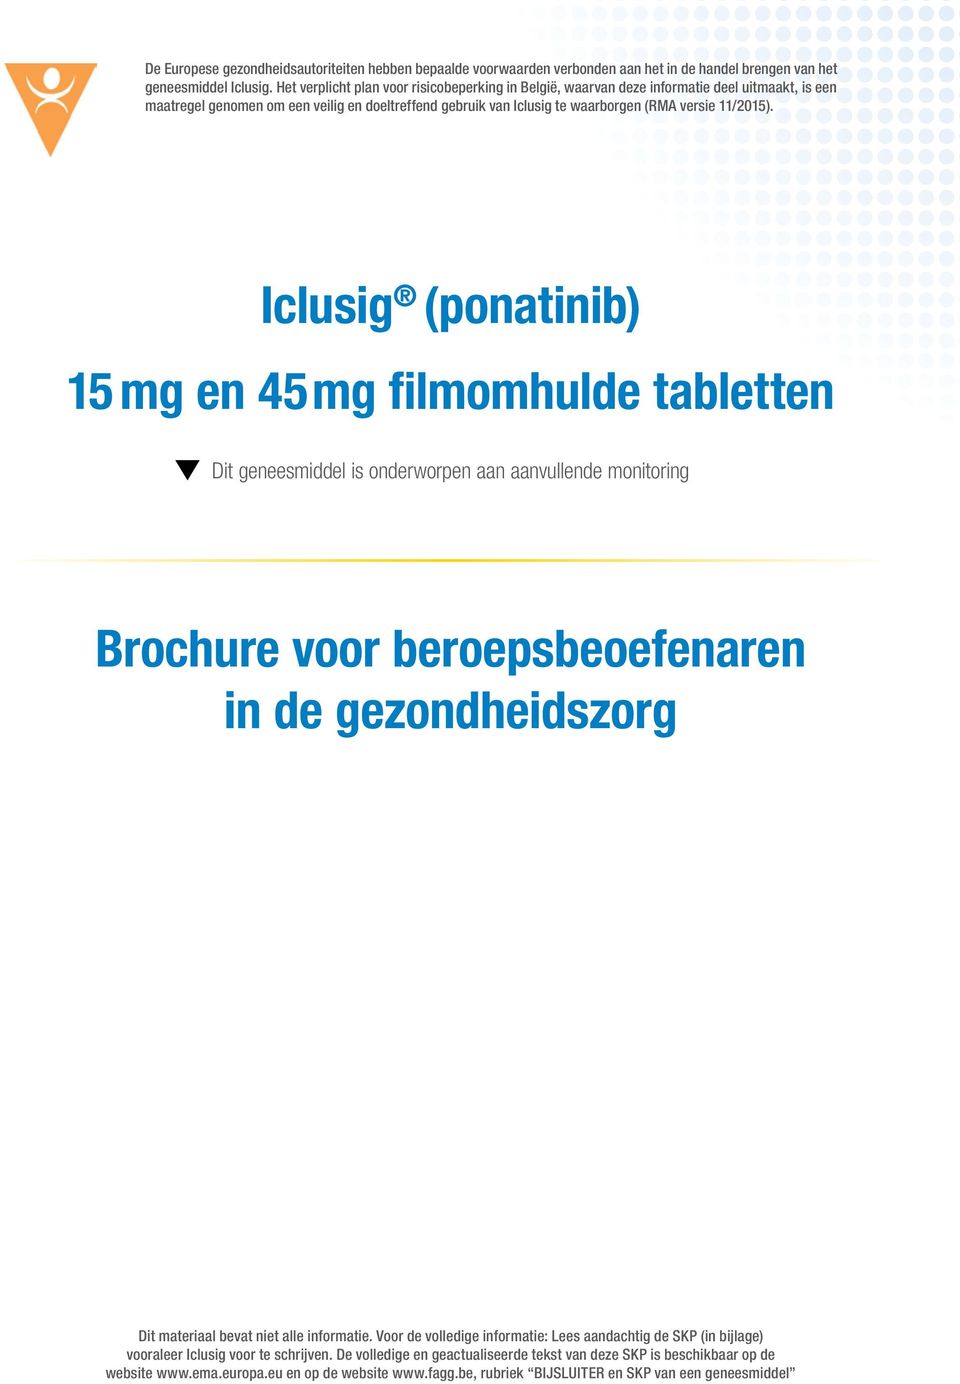 Iclusig (ponatinib) 15 mg en 45 mg filmomhulde tabletten Dit geneesmiddel is onderworpen aan aanvullende monitoring Brochure voor beroepsbeoefenaren in de gezondheidszorg Dit materiaal bevat niet